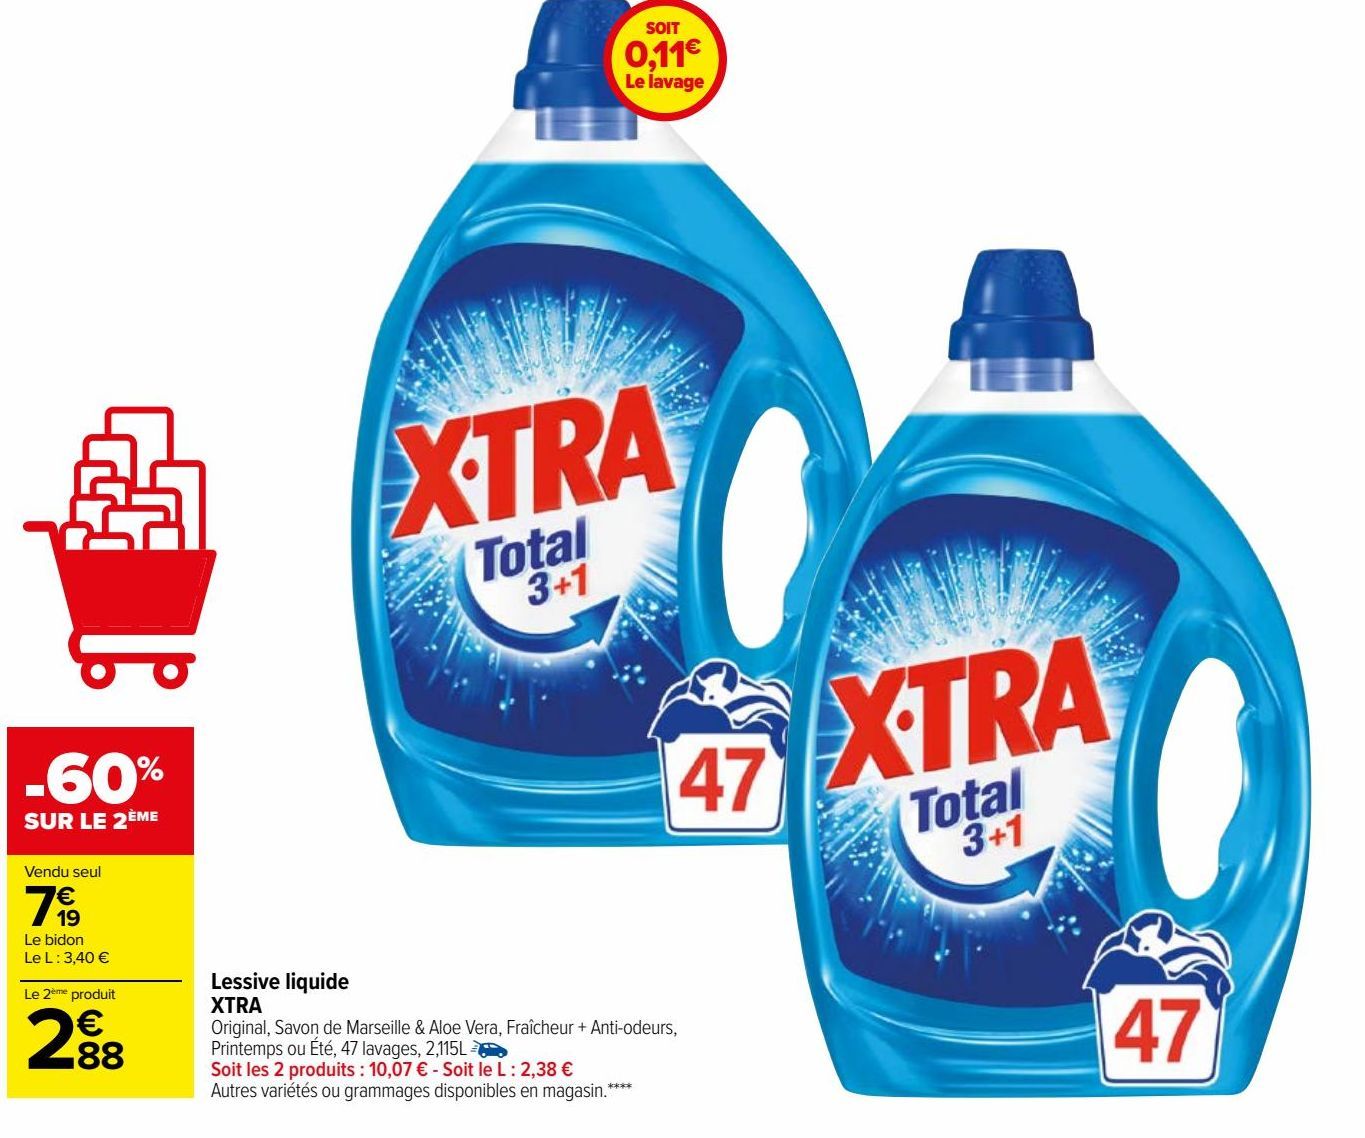 Lessive liquide XTRA